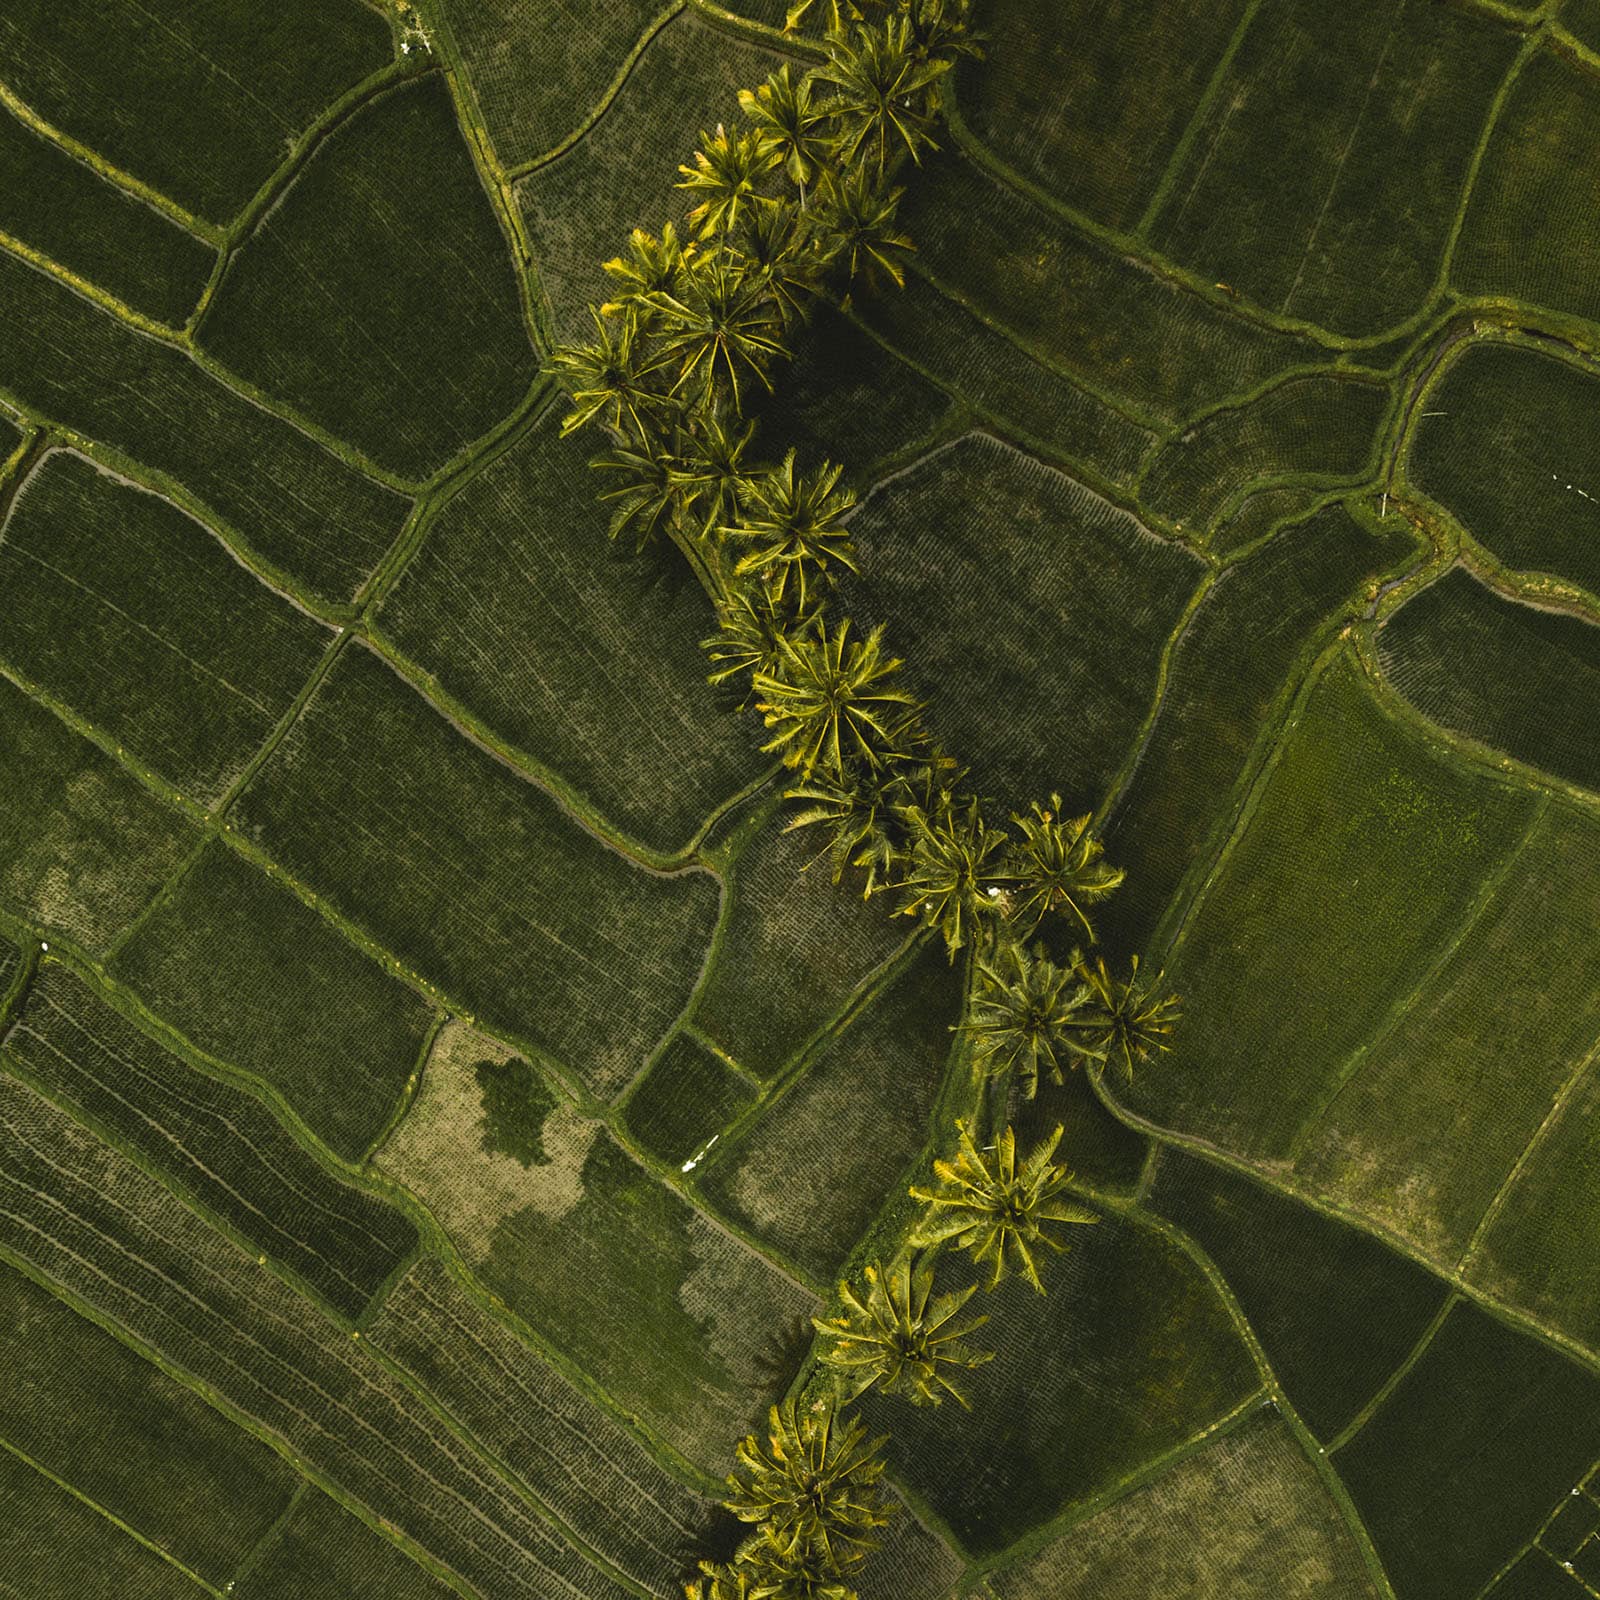 Saftig grünes Reisfeld in Bali von oben